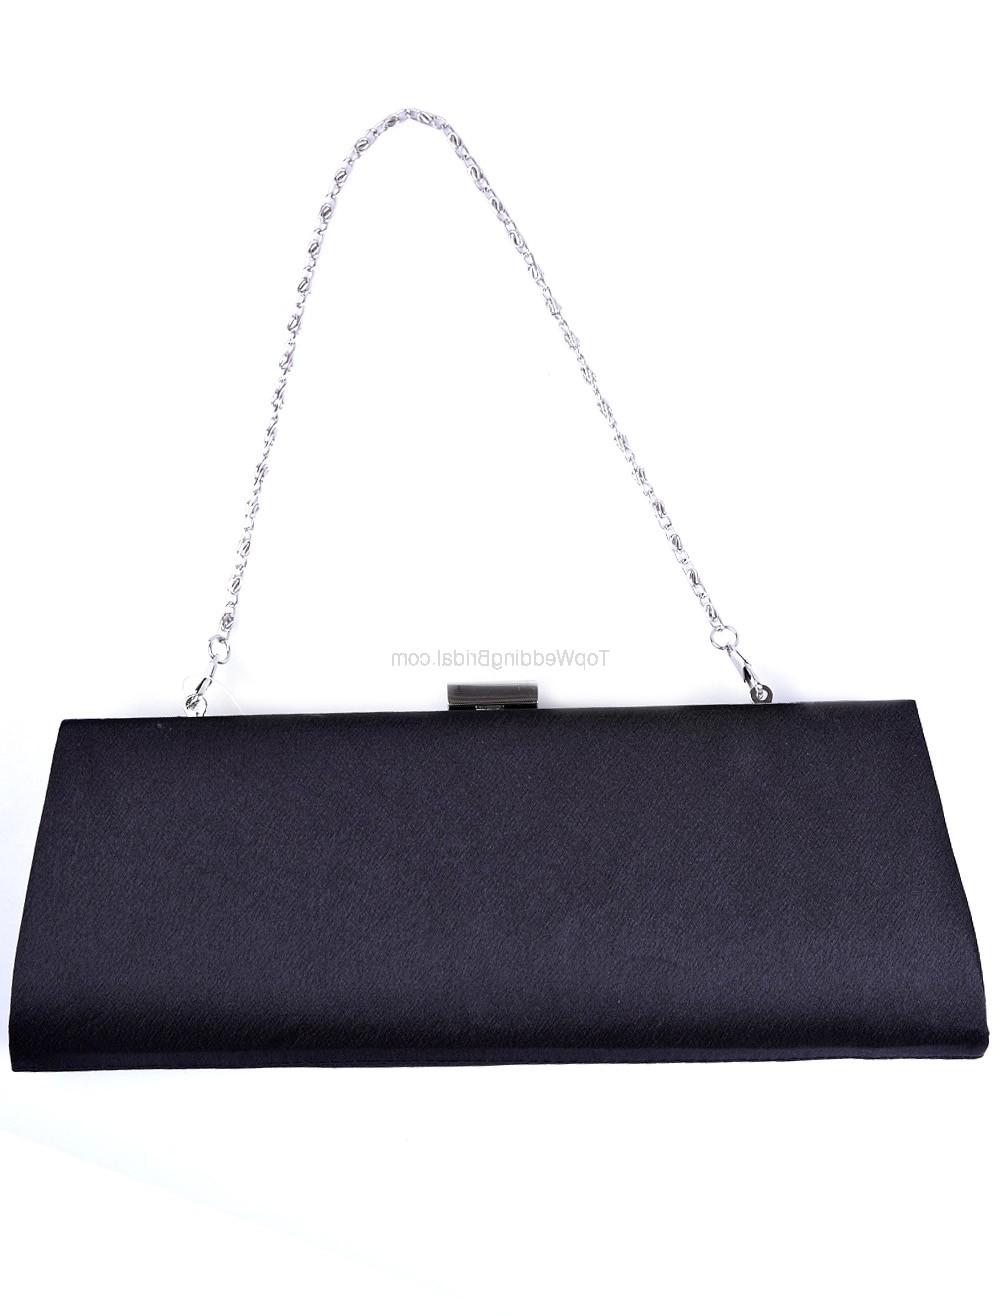 Attractive 27 10cm Brocade Rhinestone Womens Special Occasion Handbag